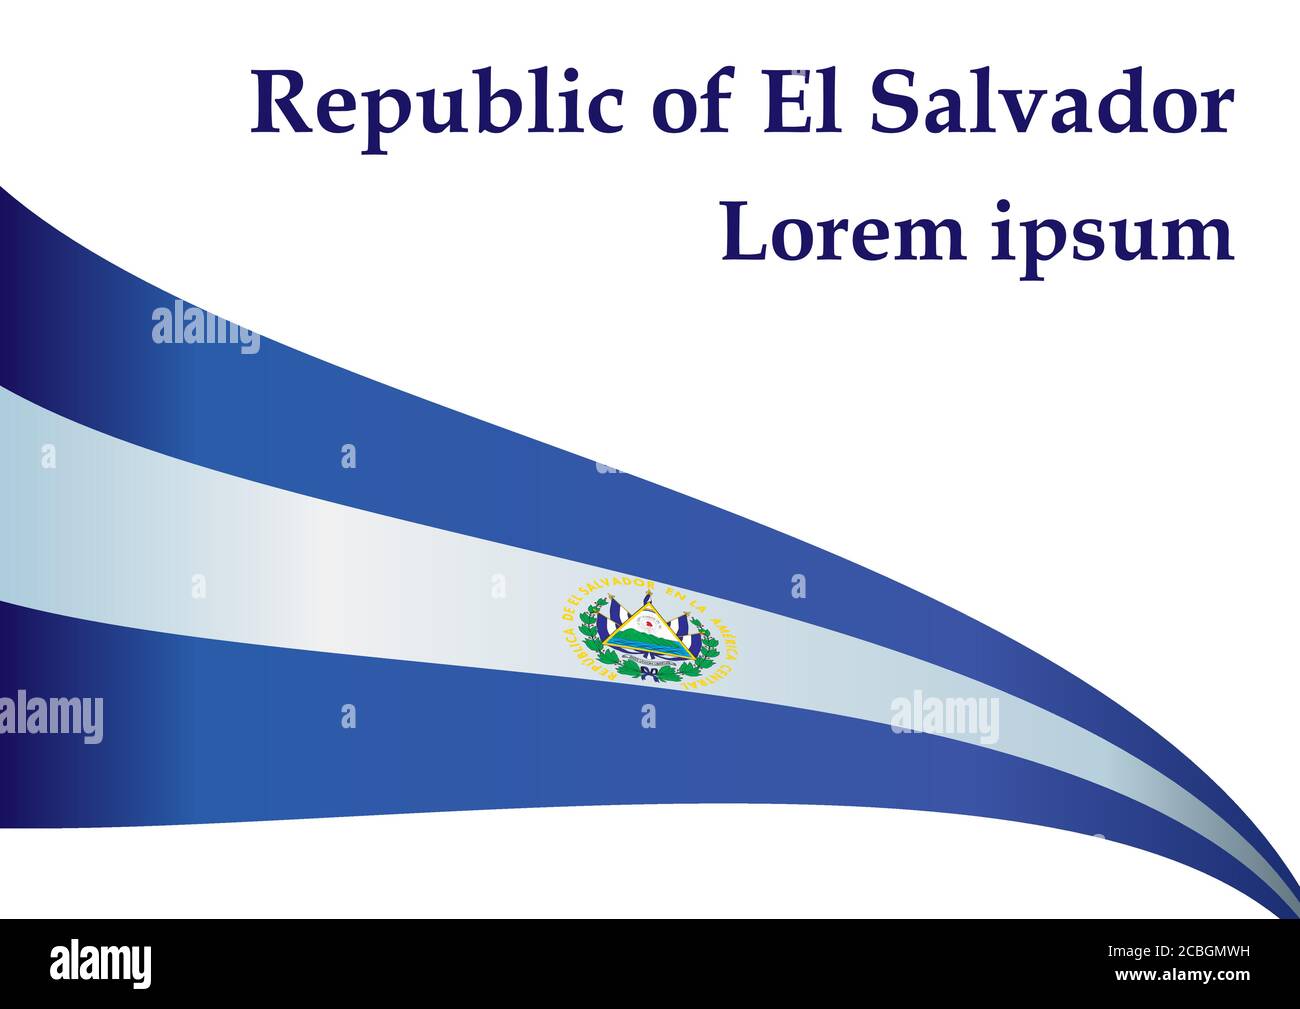 Flag of El Salvador, Republic of El Salvador. Template for award design, an official document with the flag of El Salvador. Stock Vector